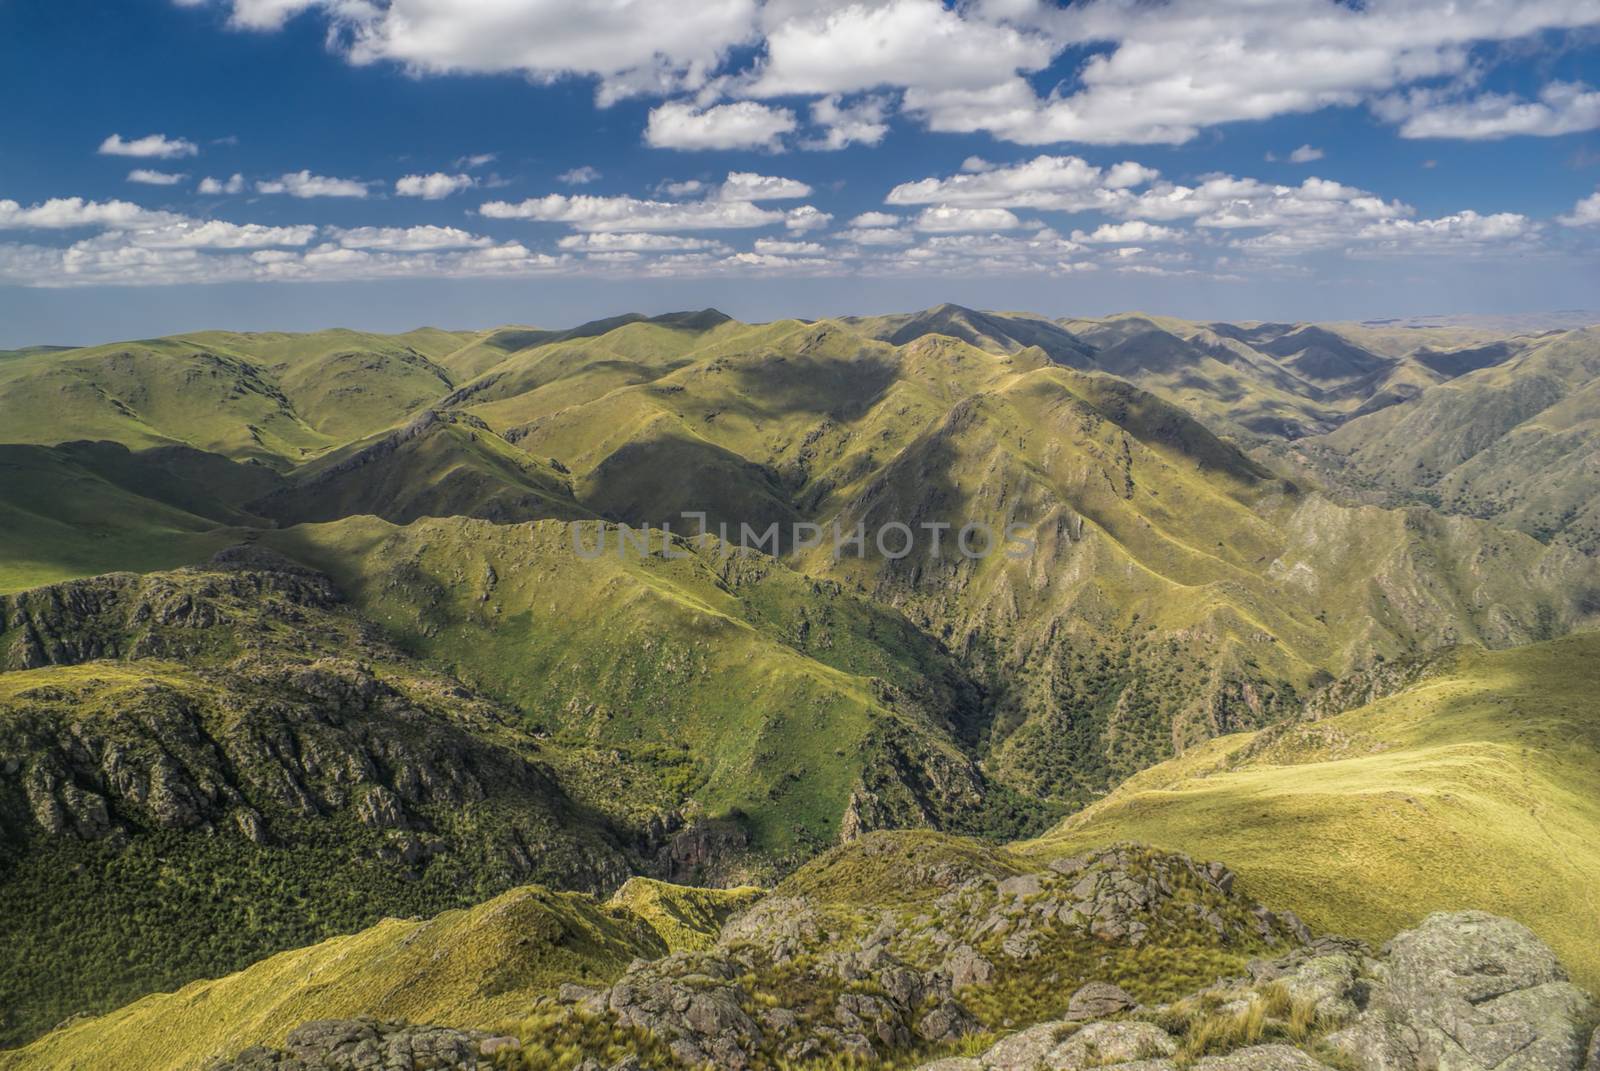 Scenic mountainous landscape in Capilla del Monte in Argentina, South America